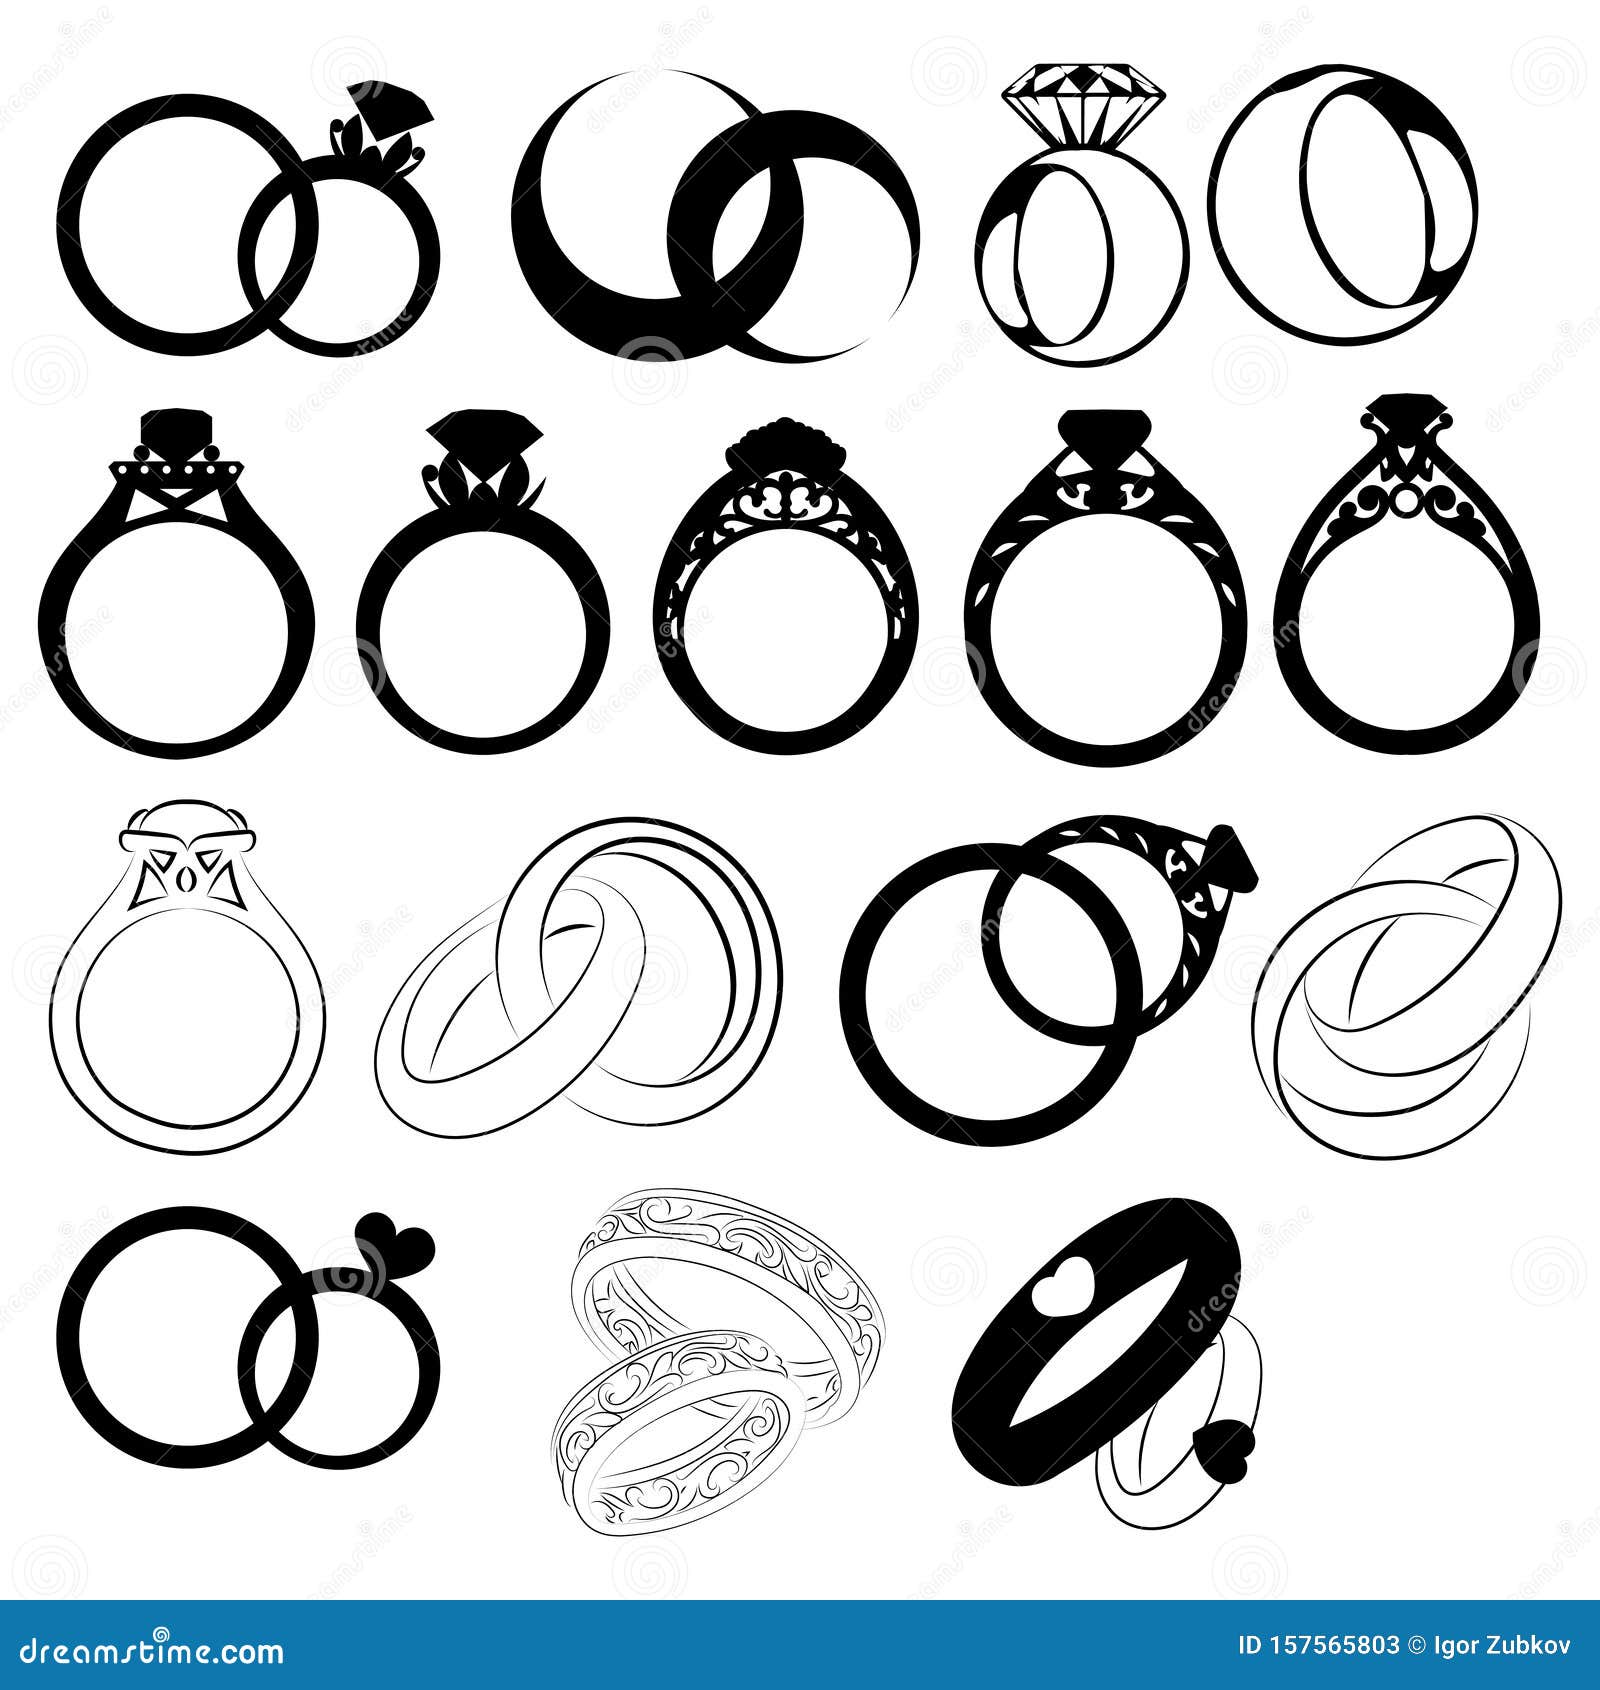 Engraved Ring Logo Mockup - Free Download